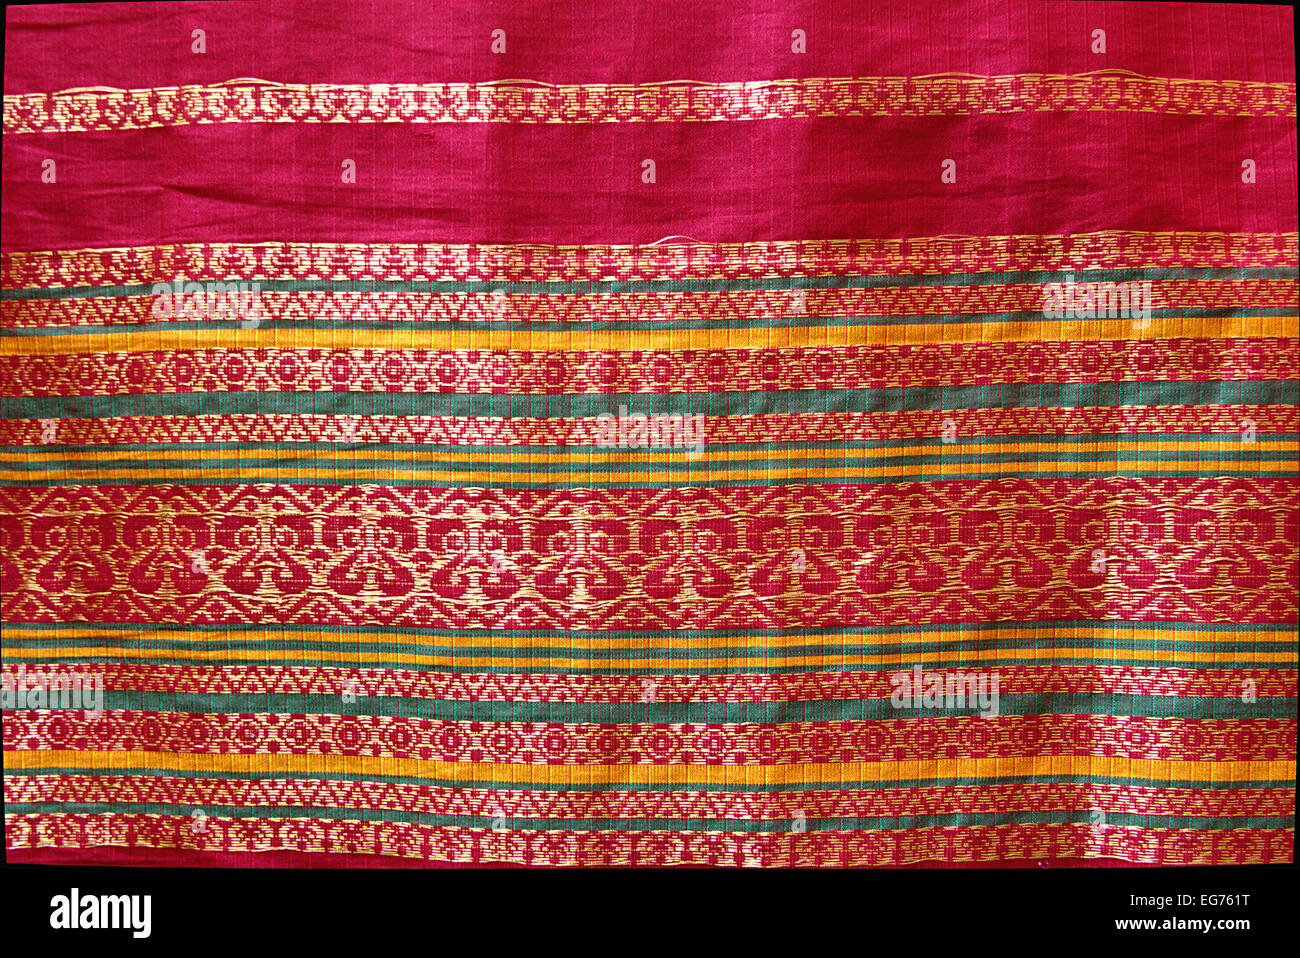 Roter Faden Design arbeiten auf rotem Rand der indischen Seide Sari Stockfoto